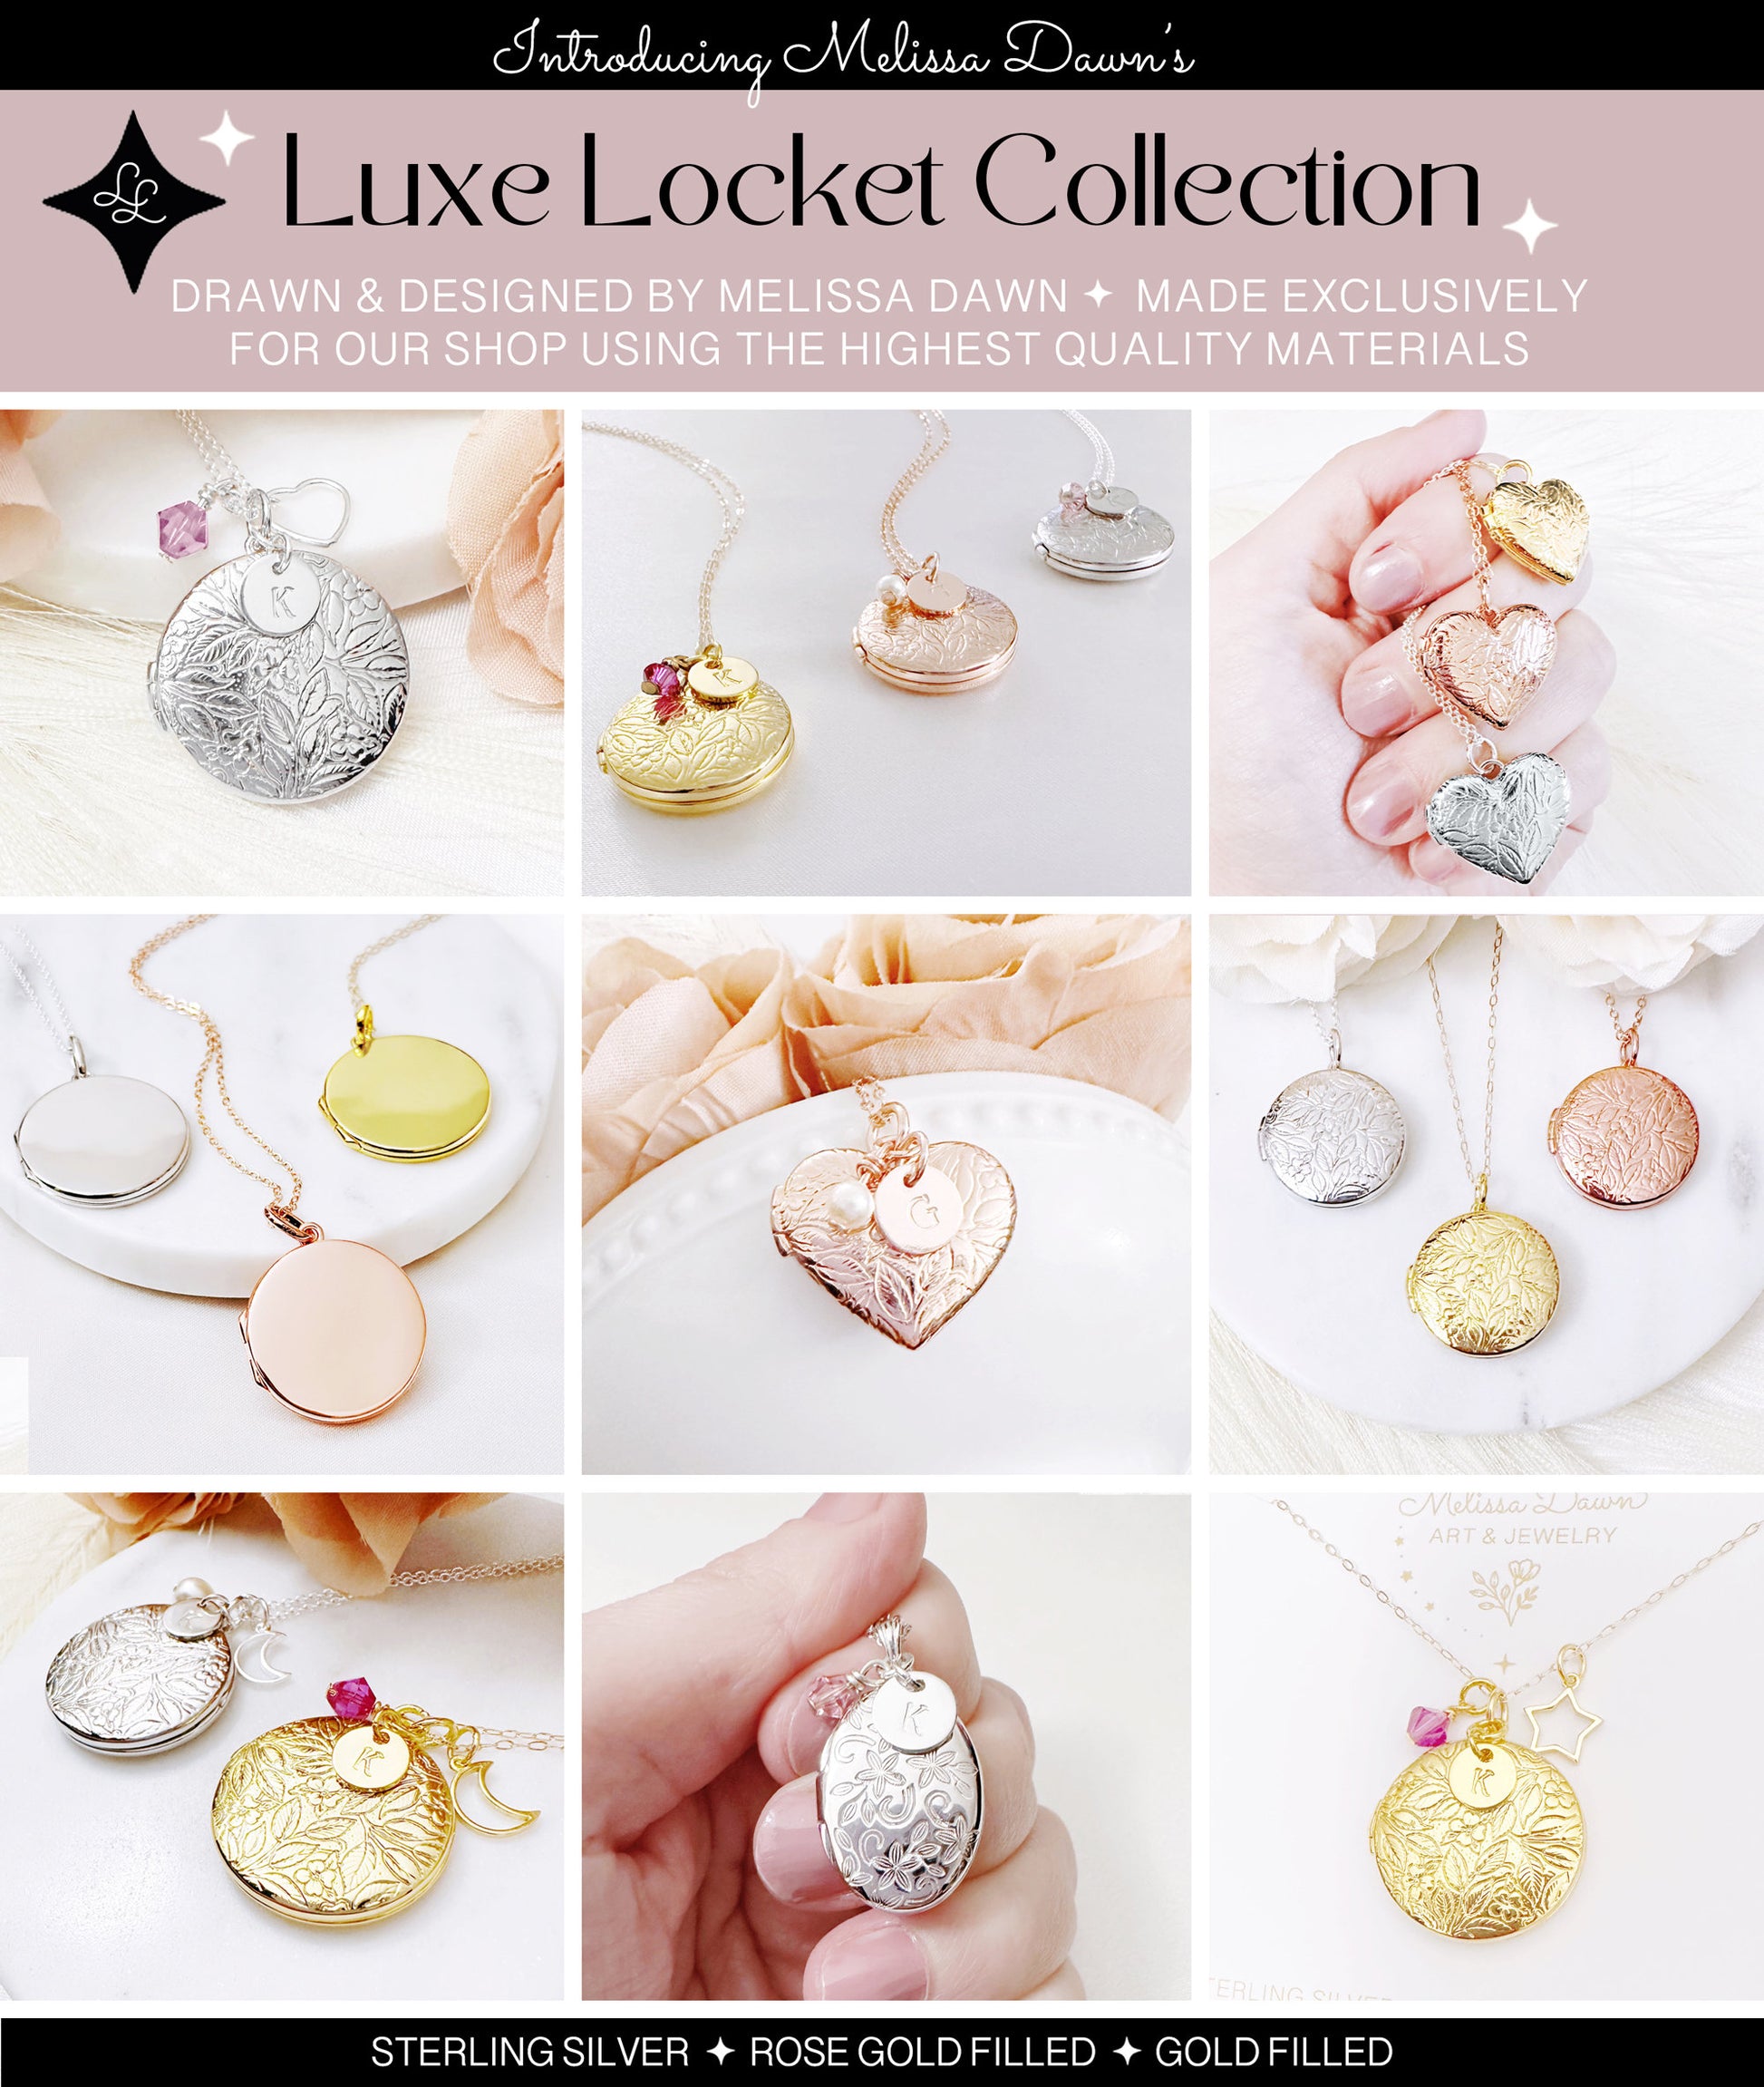 Sterling Silver Locket Necklace / Star Locket / Solid Sterling Locket / Locket and Star Charm / Gold Filled Locket Necklace / Photo Locket